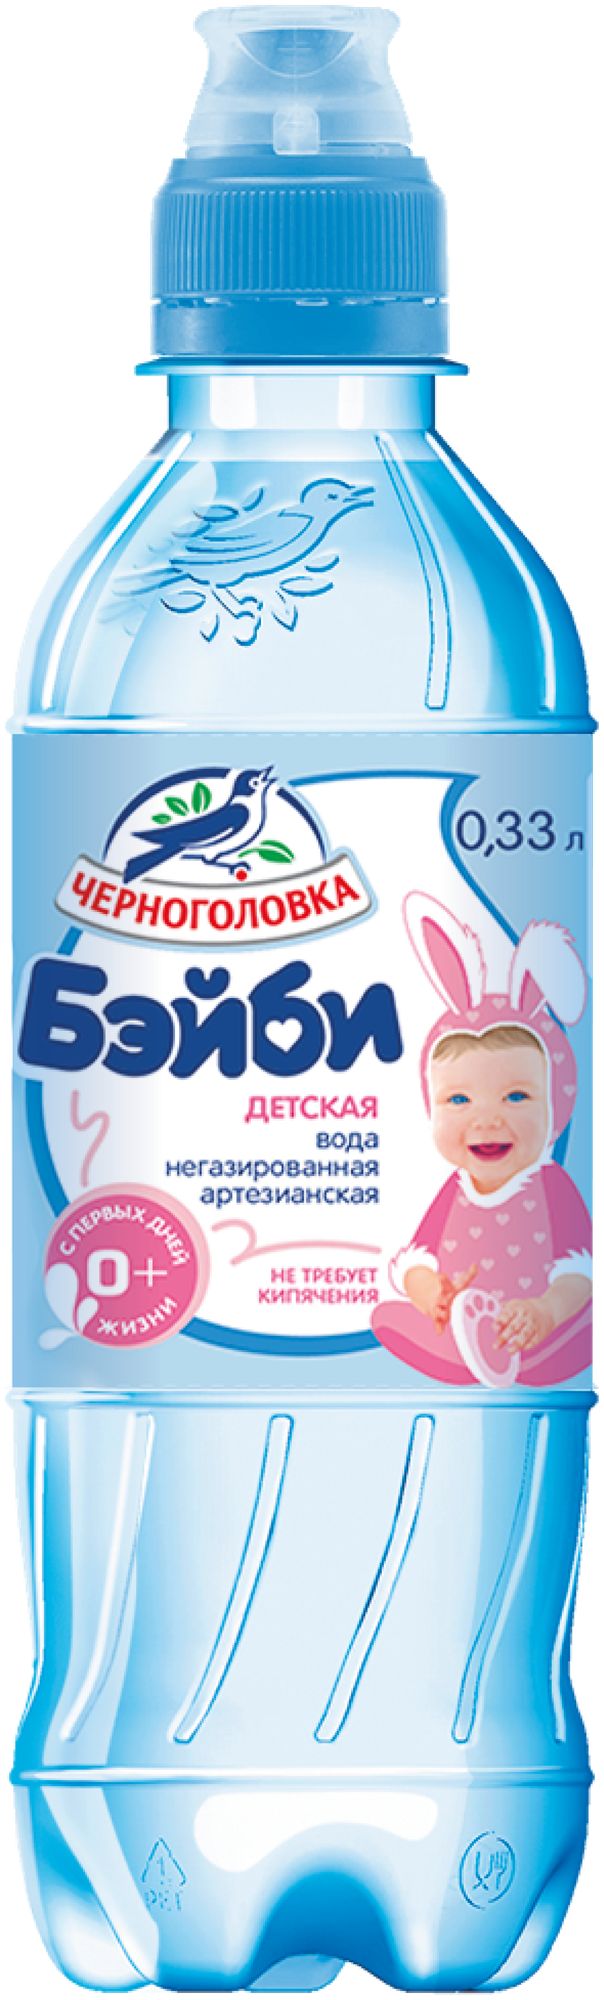 Детская вода Черноголовская, c рождения (0,33л*12шт)